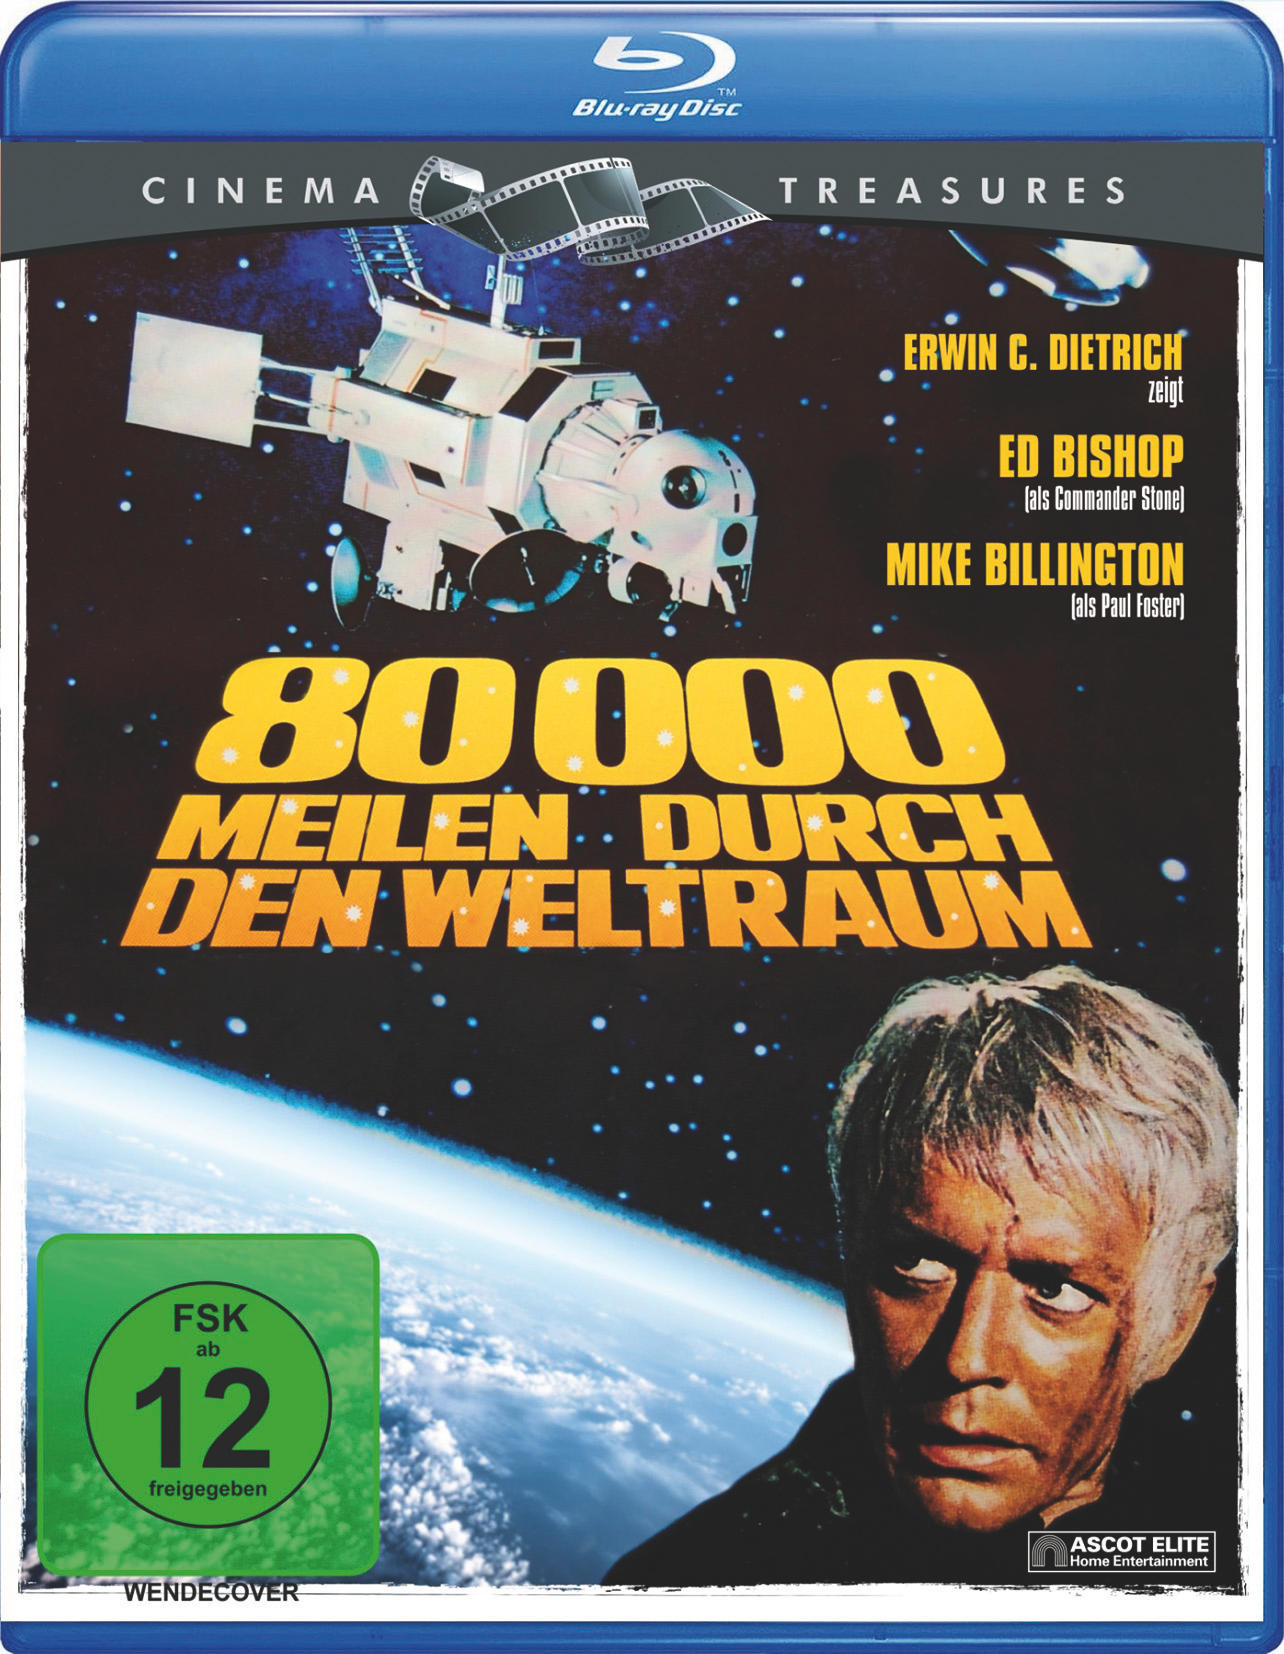 80.000 Meilen durch Treasures) Blu-ray den Weltraum (Cinema